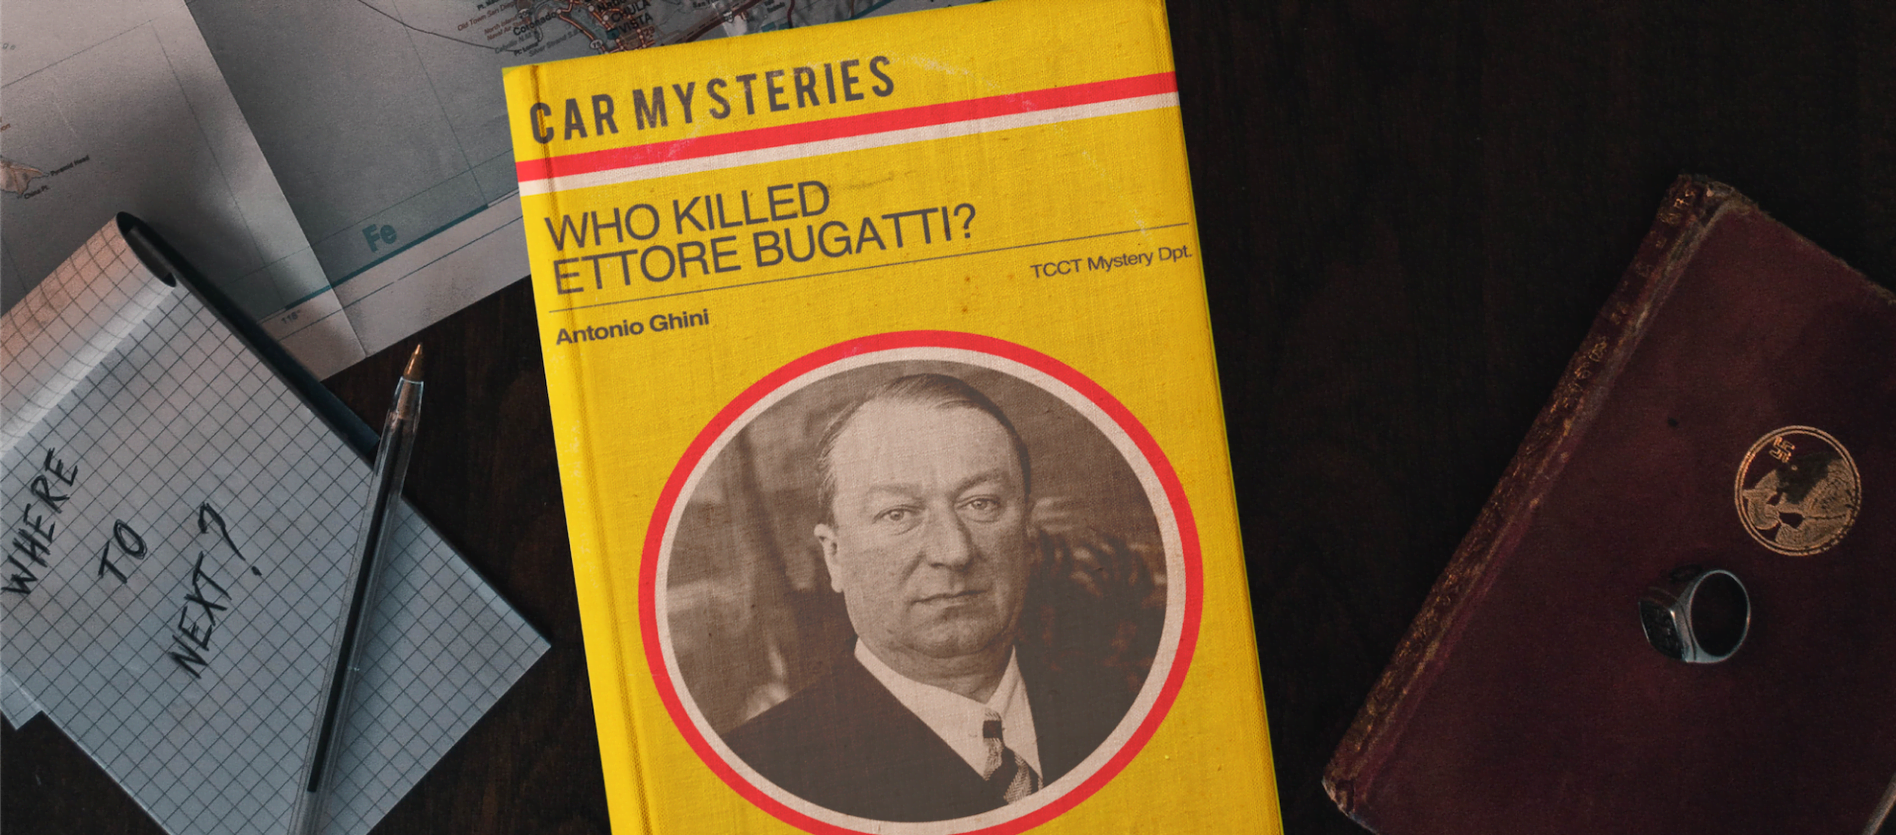 Who killed Ettore Bugatti?